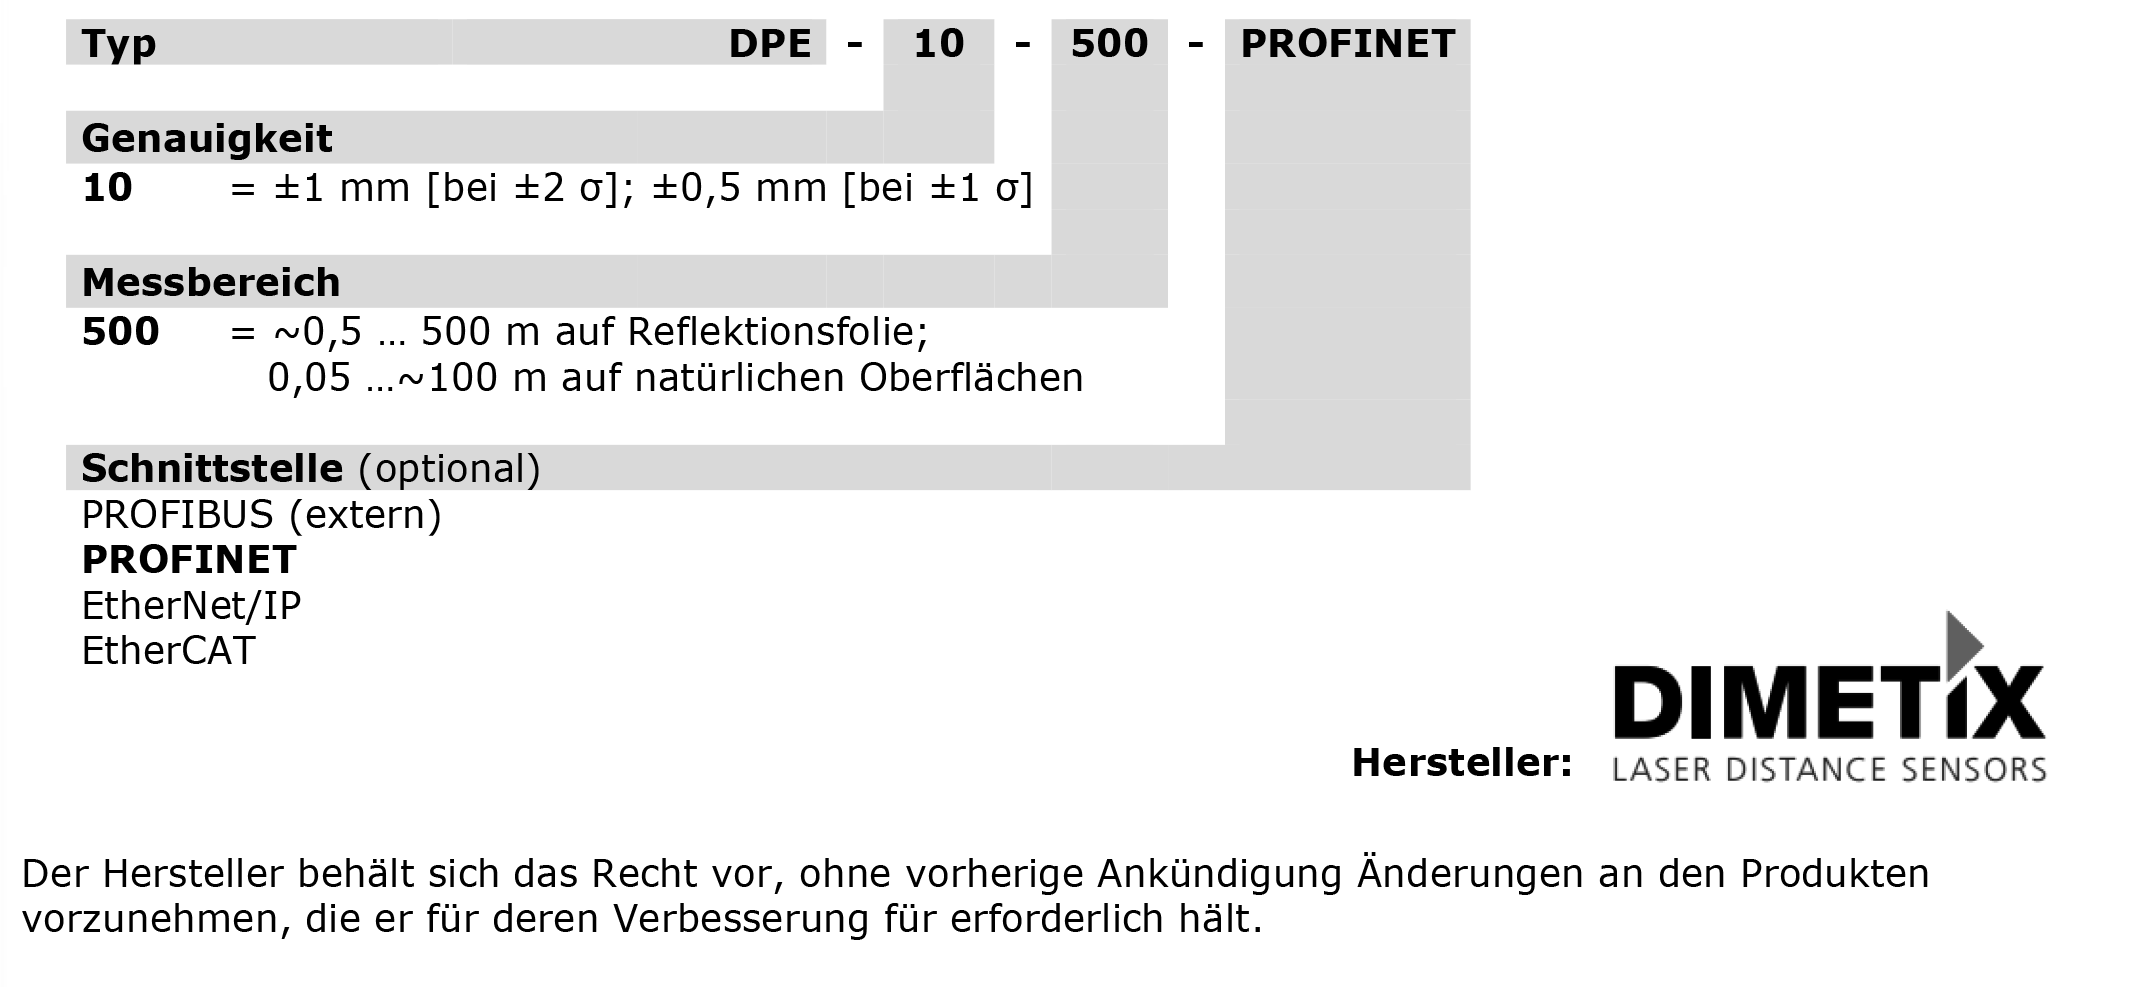 Bestellschluessel_DPE-10-500